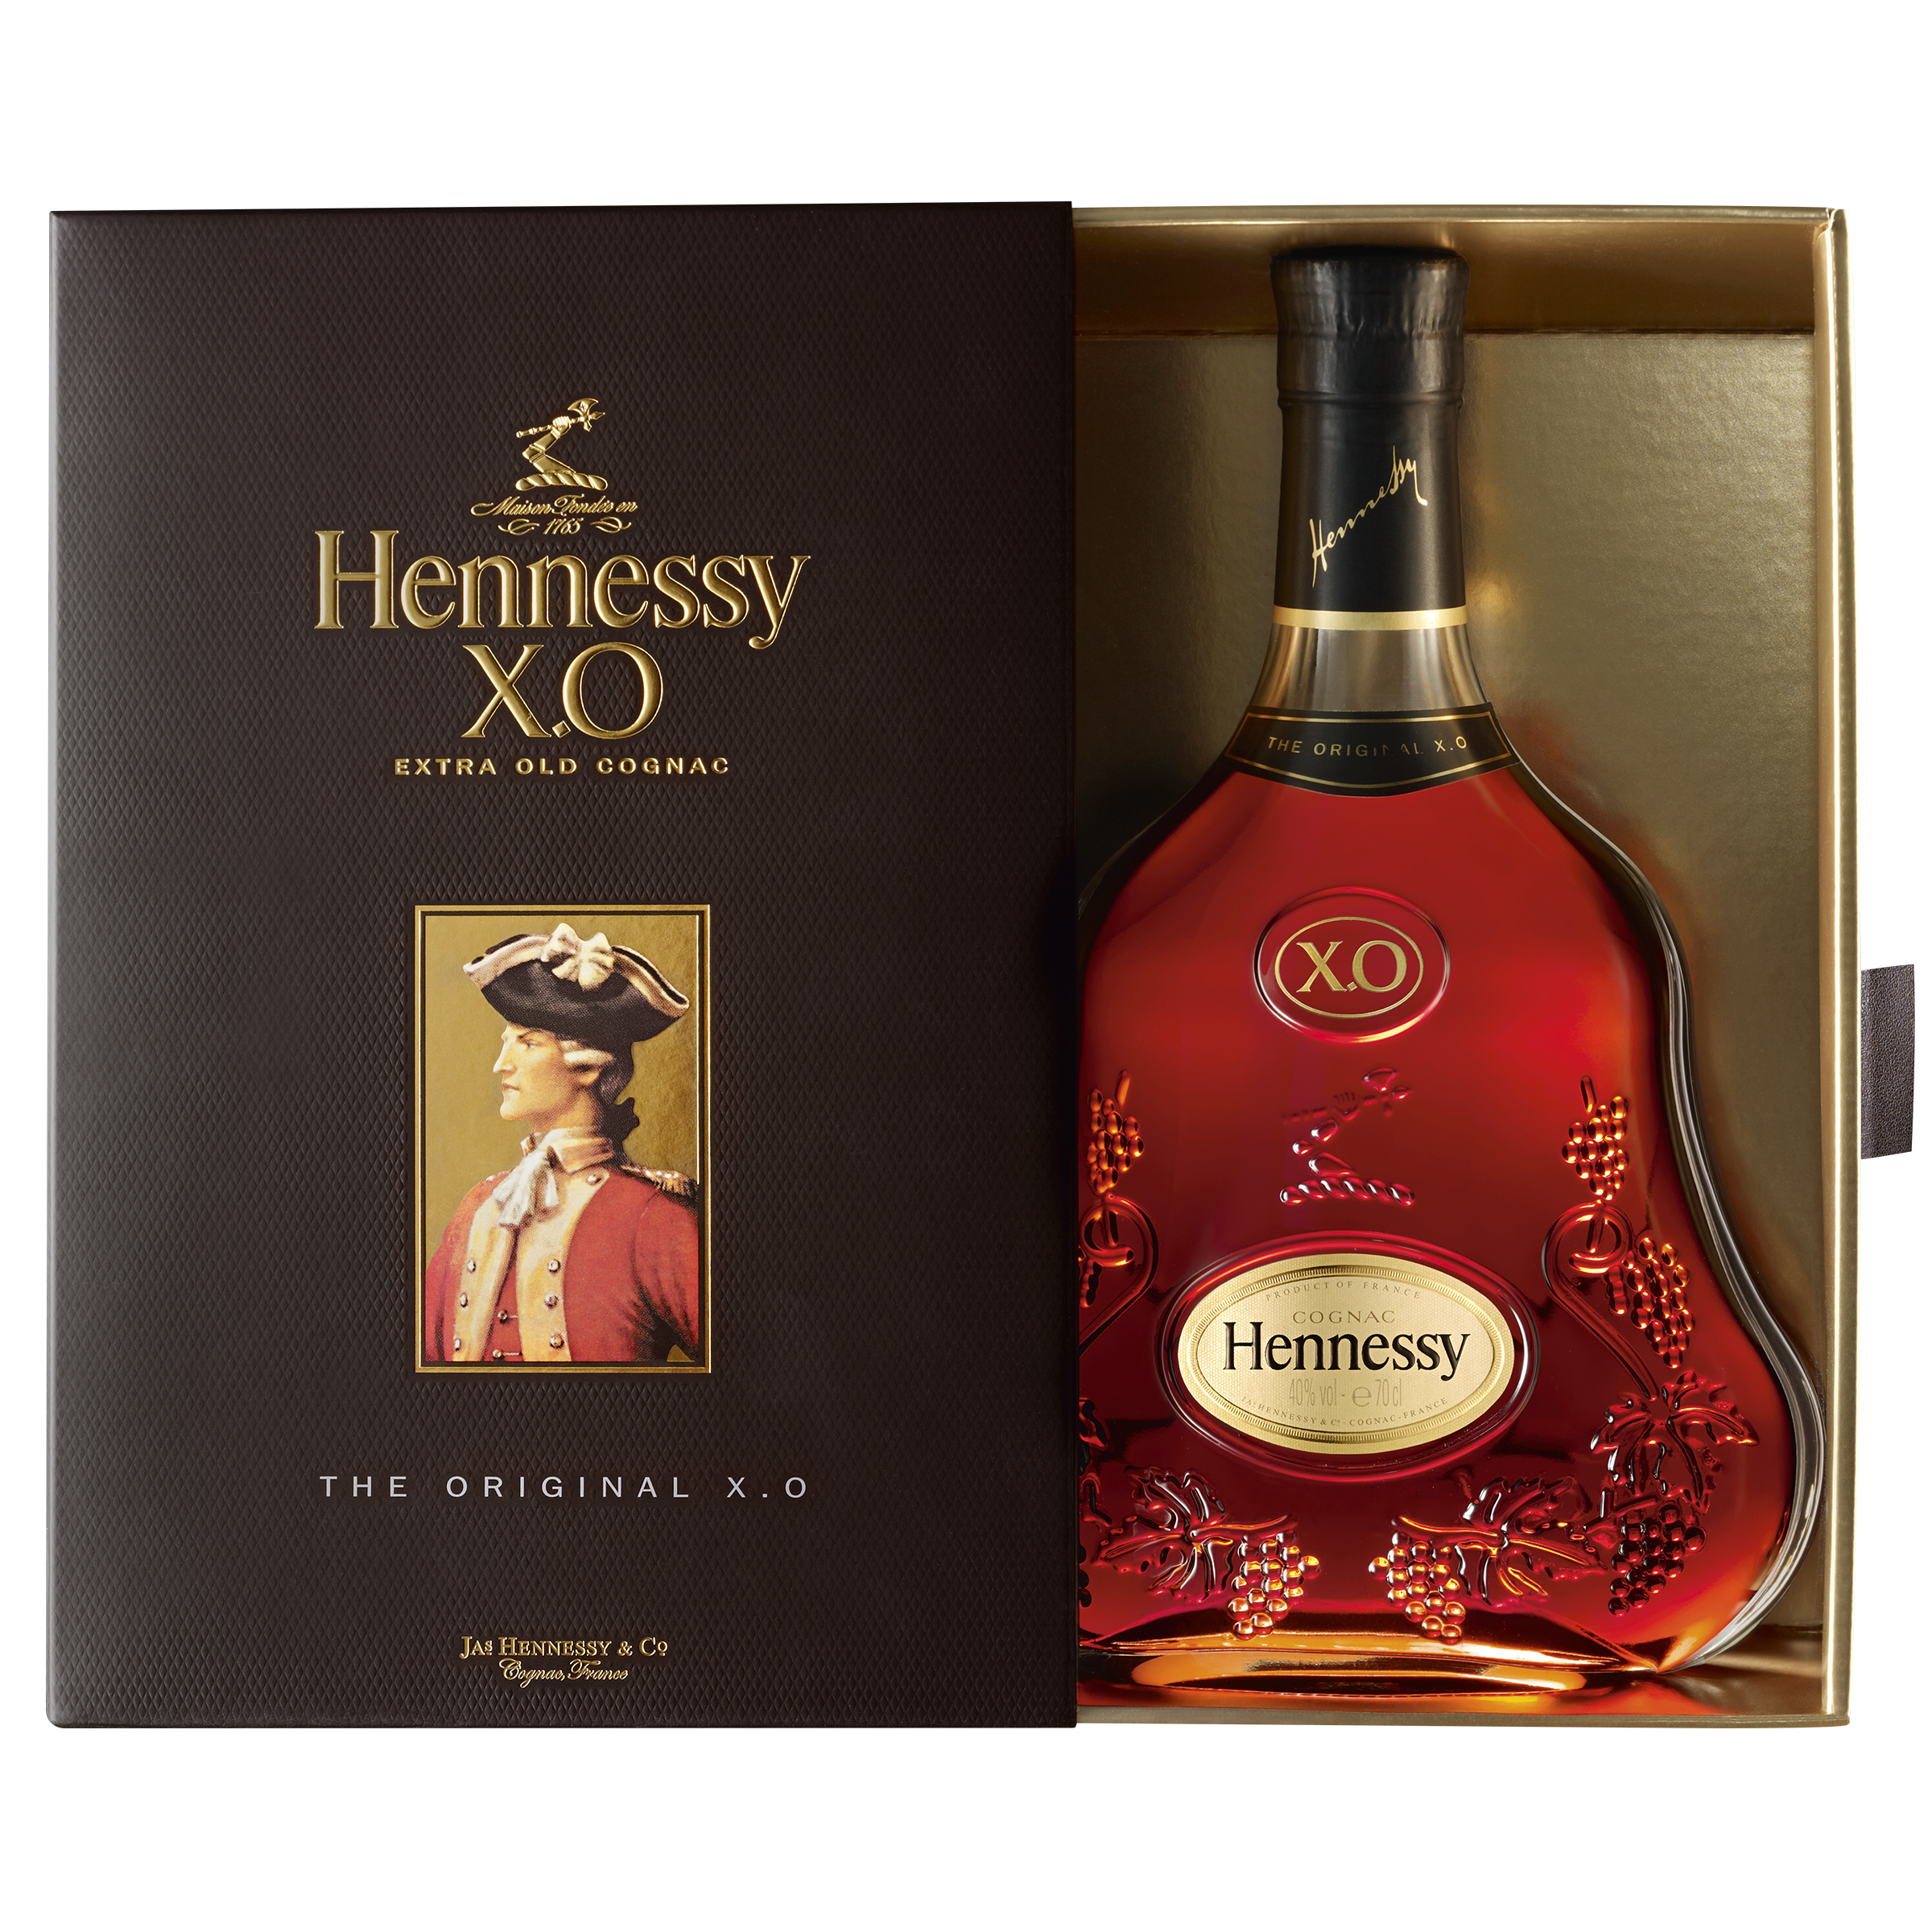 Коньяк Hennessy XO 20 років витримки, в подарунковій упаковці, 40%, 0,7 л (1103) - фото 4